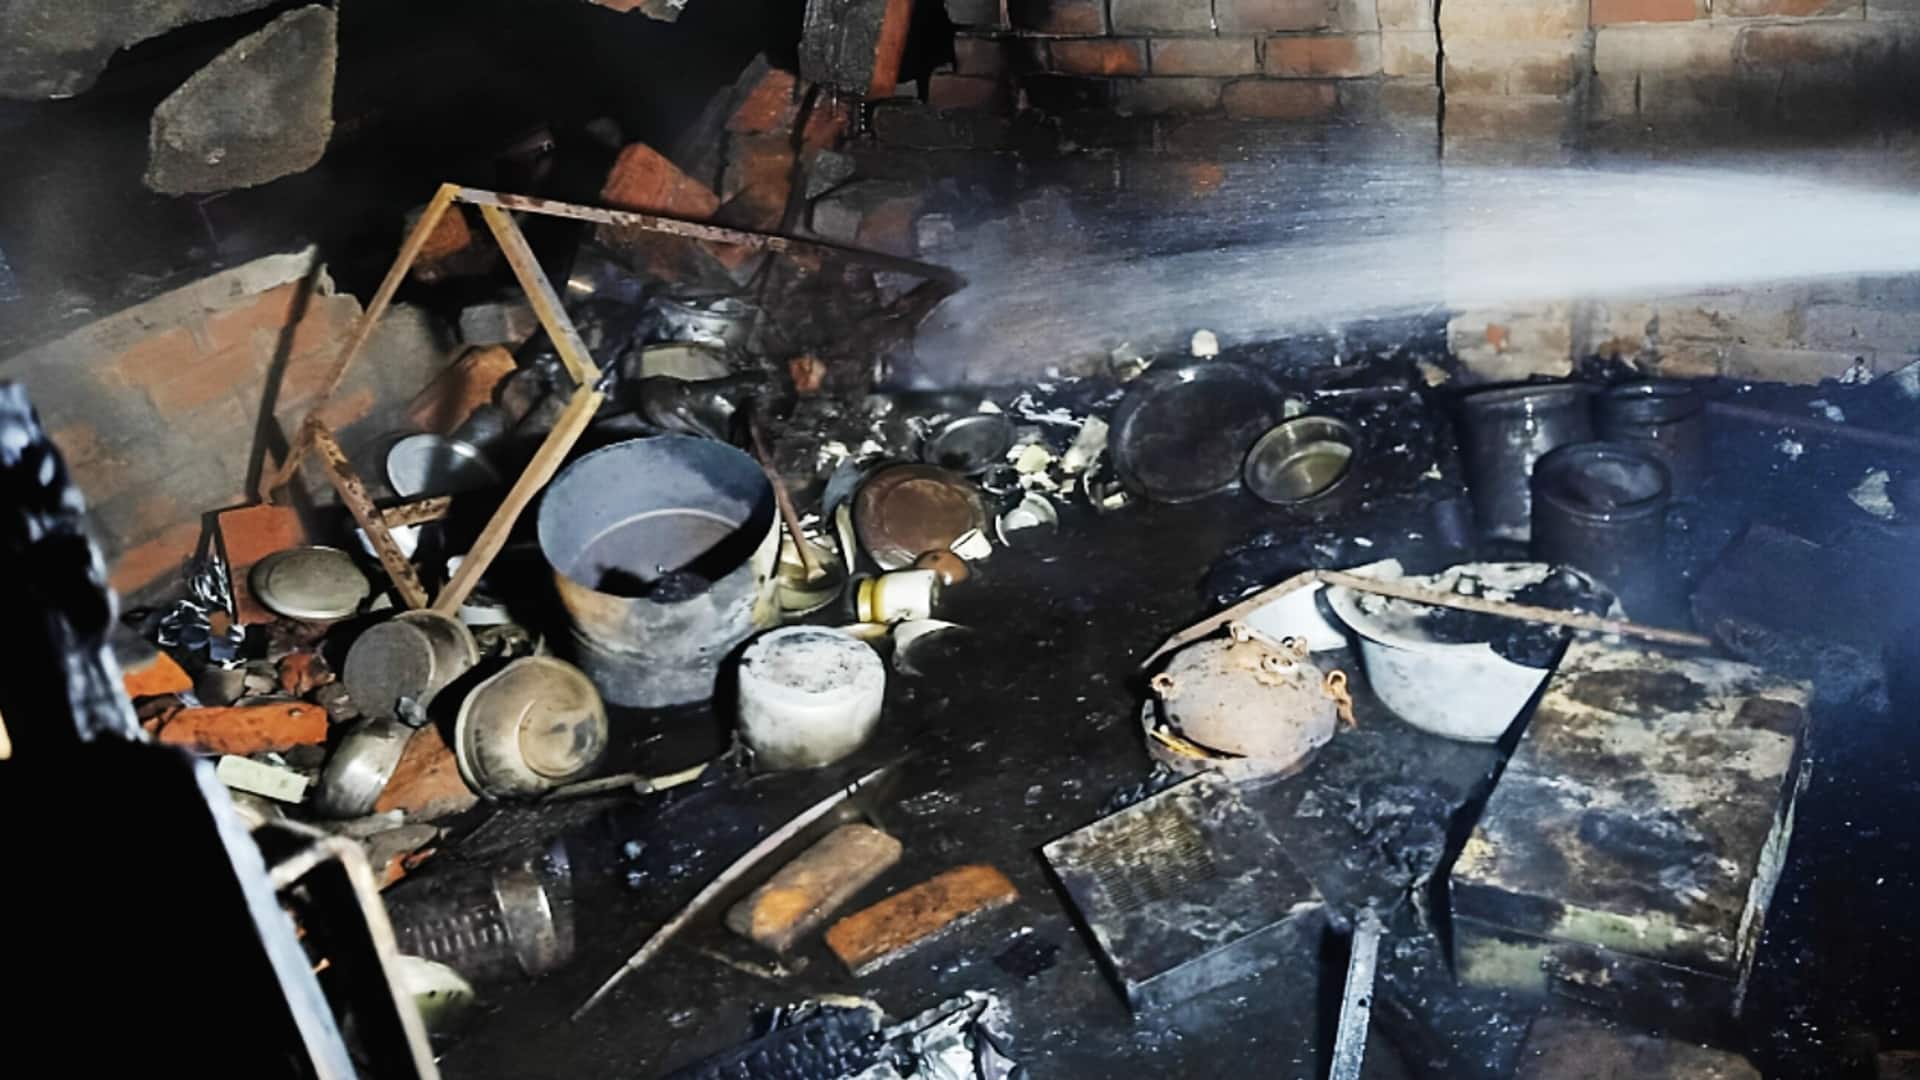 लखनऊ: घर में रखे सिलेंडरों में विस्फोट होने से परिवार के 5 लोगों की मौत